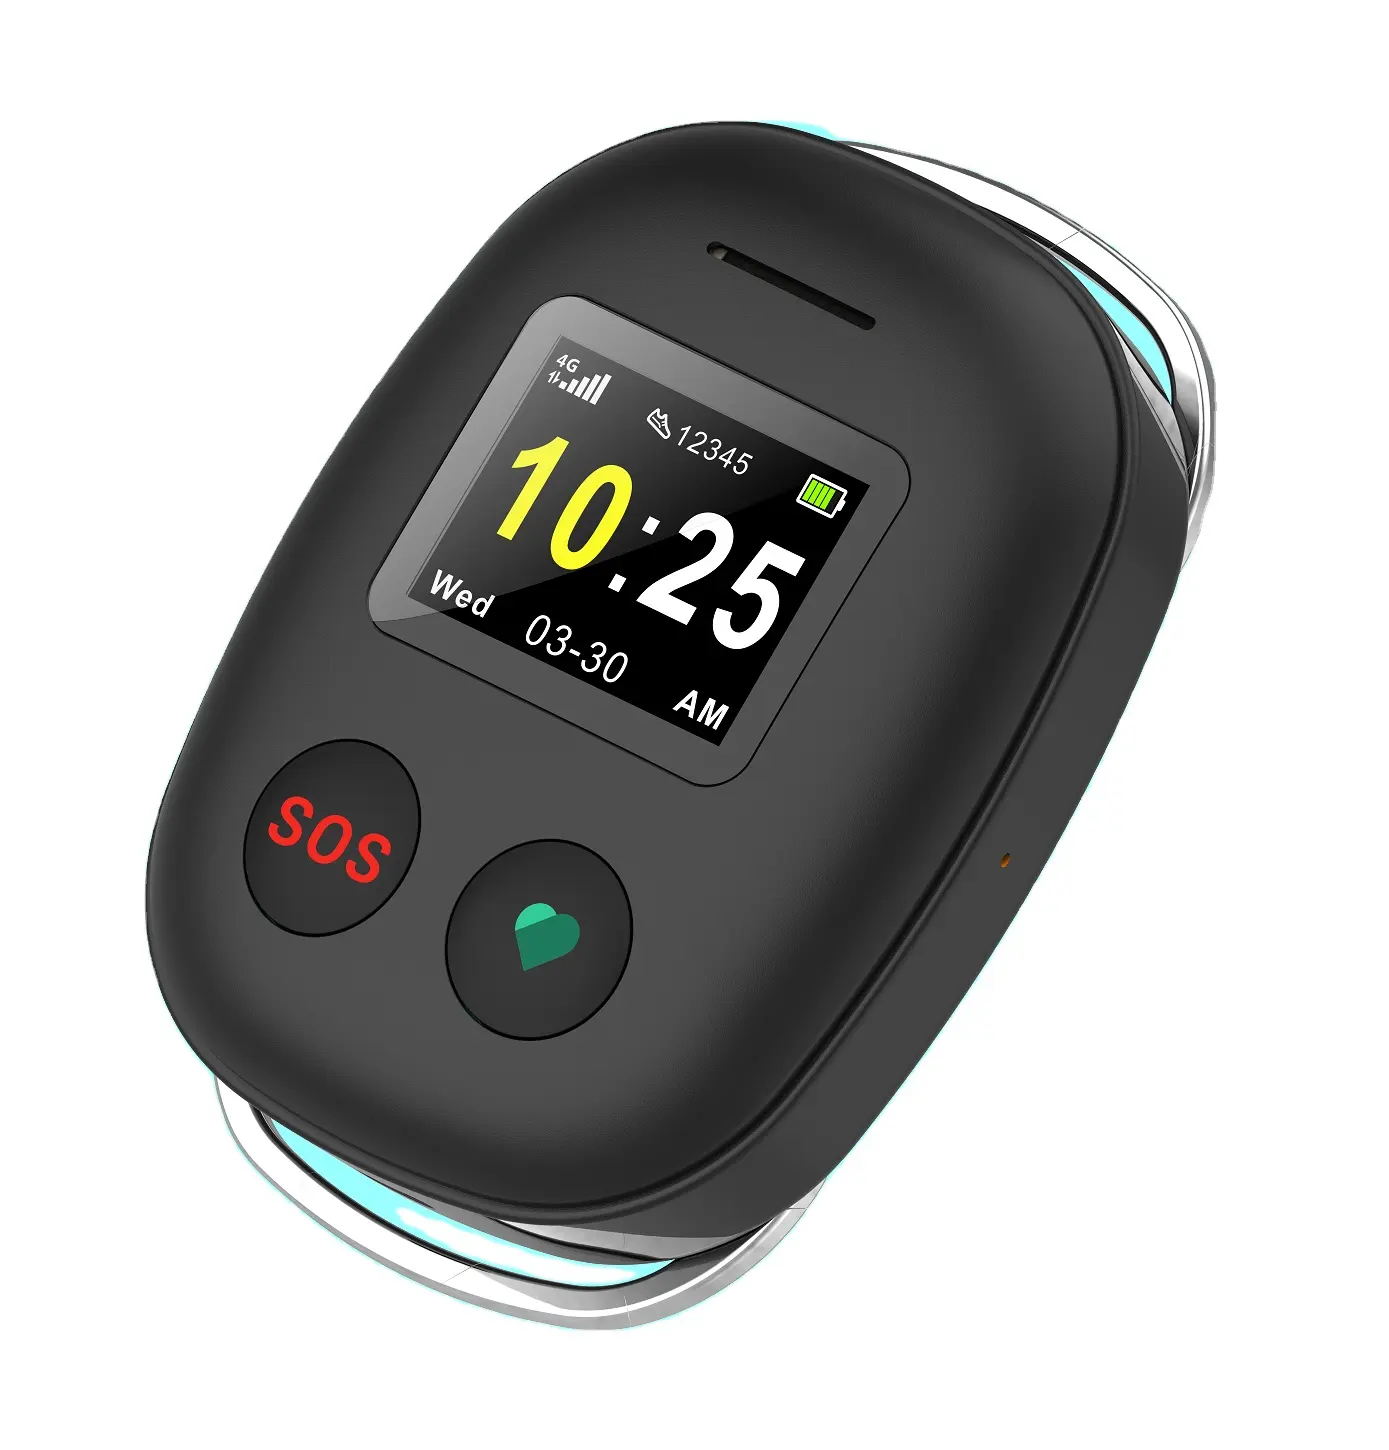 SOS pulsante di emergenza localizzatore personale L15 ciondolo intelligente per la demenza paziente e anziani GPS Tracker